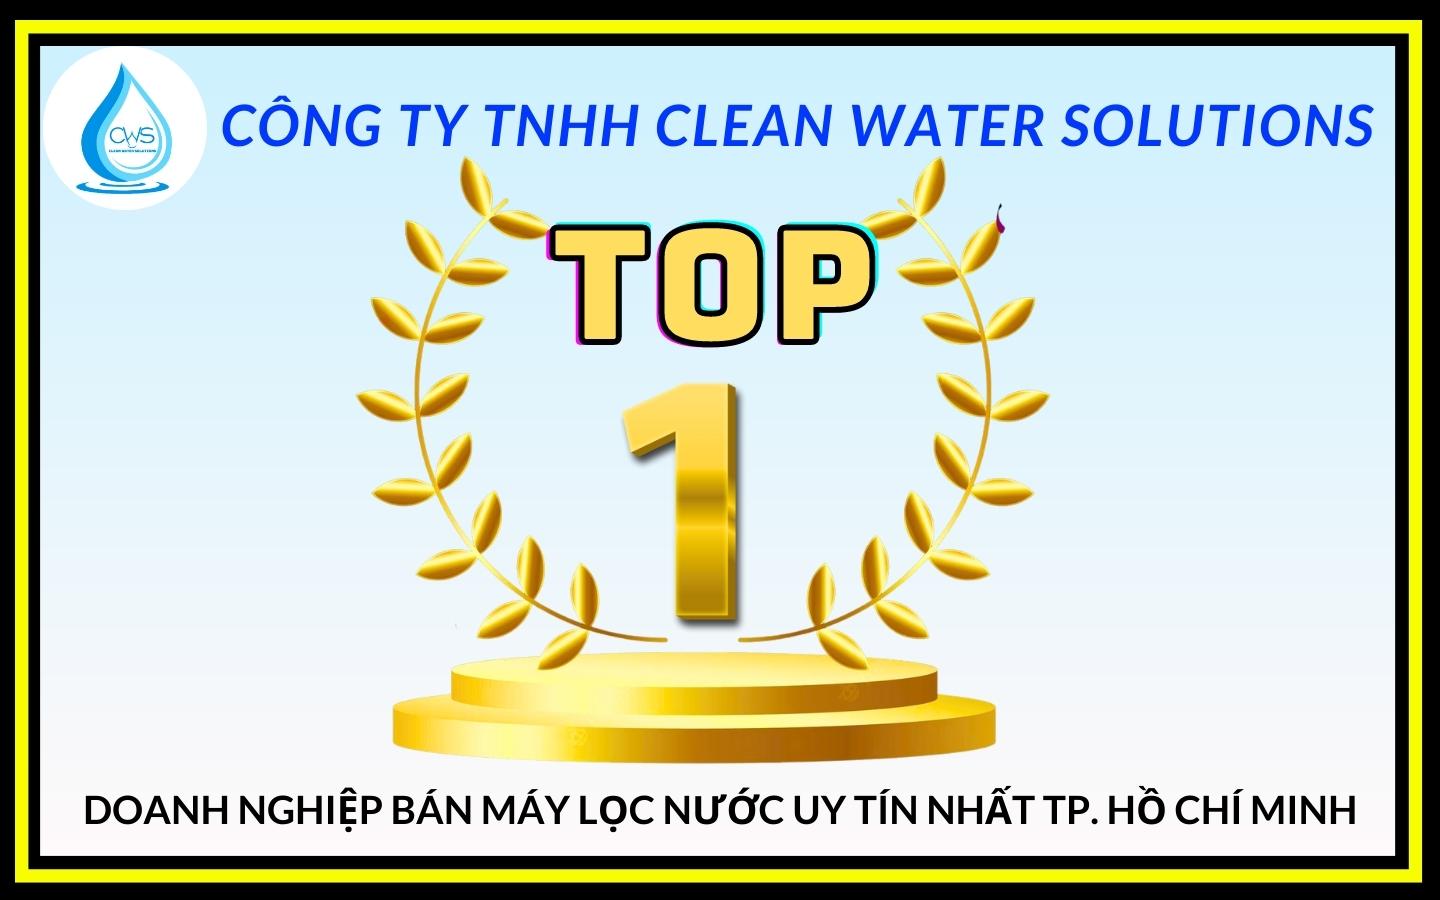 top-1-doanh-nghiep-ban-may-loc-nuoc-uy-tin-nhat